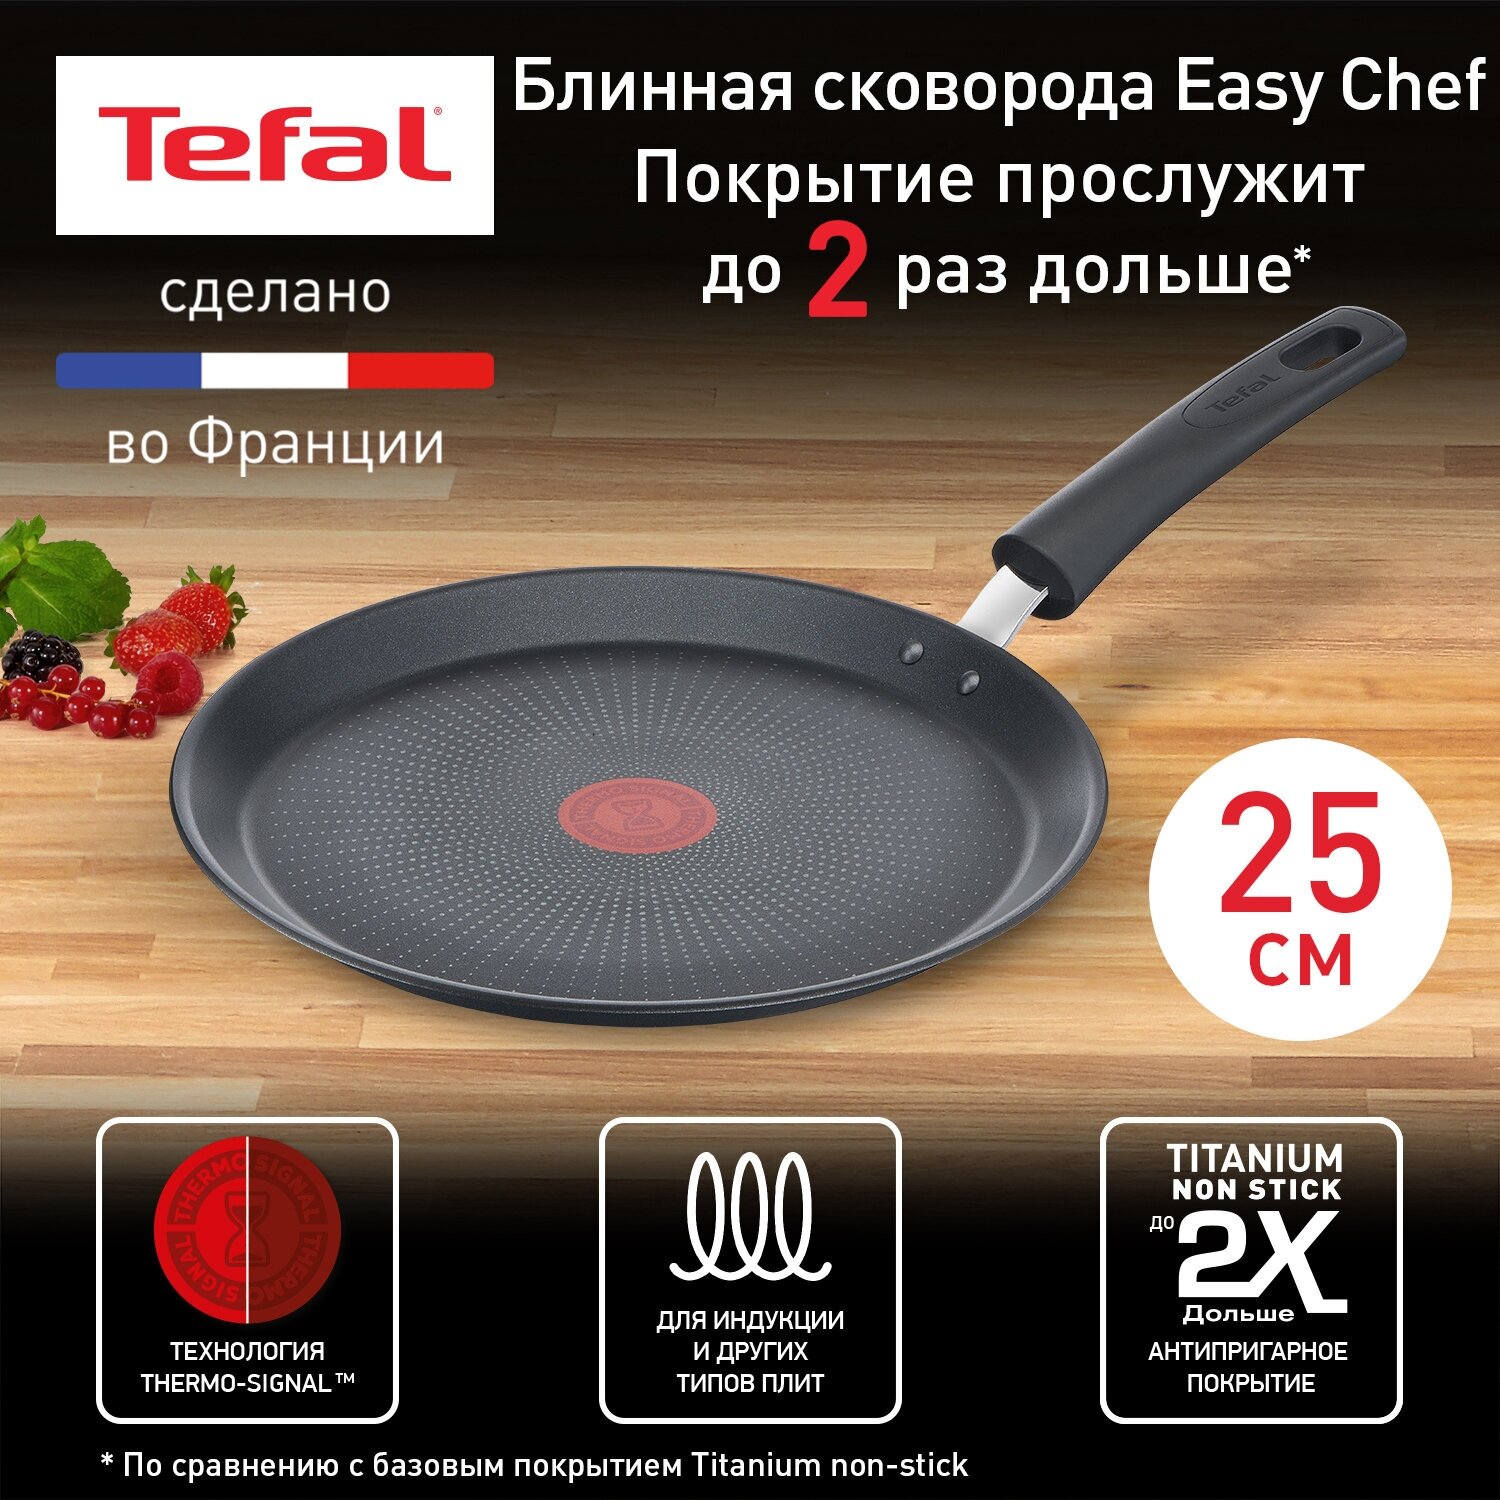 Блинная сковорода Tefal Easy Chef G2703872, диаметр 25 см, с индикатором температуры, с антипригарным покрытием, для газовых, электрических и индукционных плит, сделано во Франции